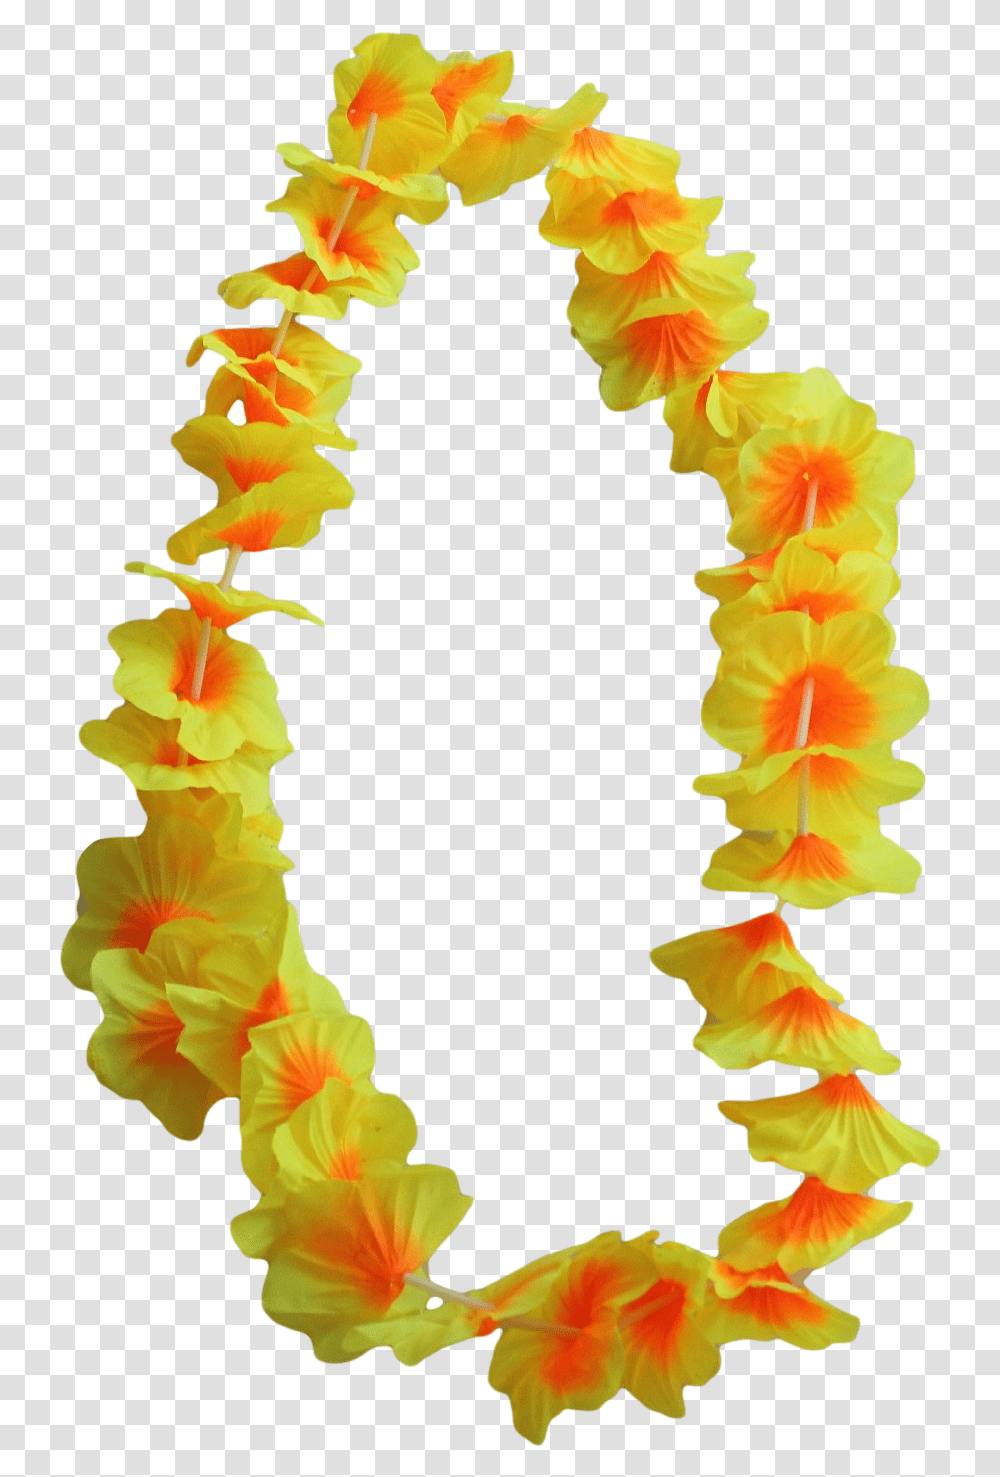 Download 12 X Hawaiian Flower Leis Hawaiian Leis, Plant, Blossom, Flower Arrangement, Ornament Transparent Png